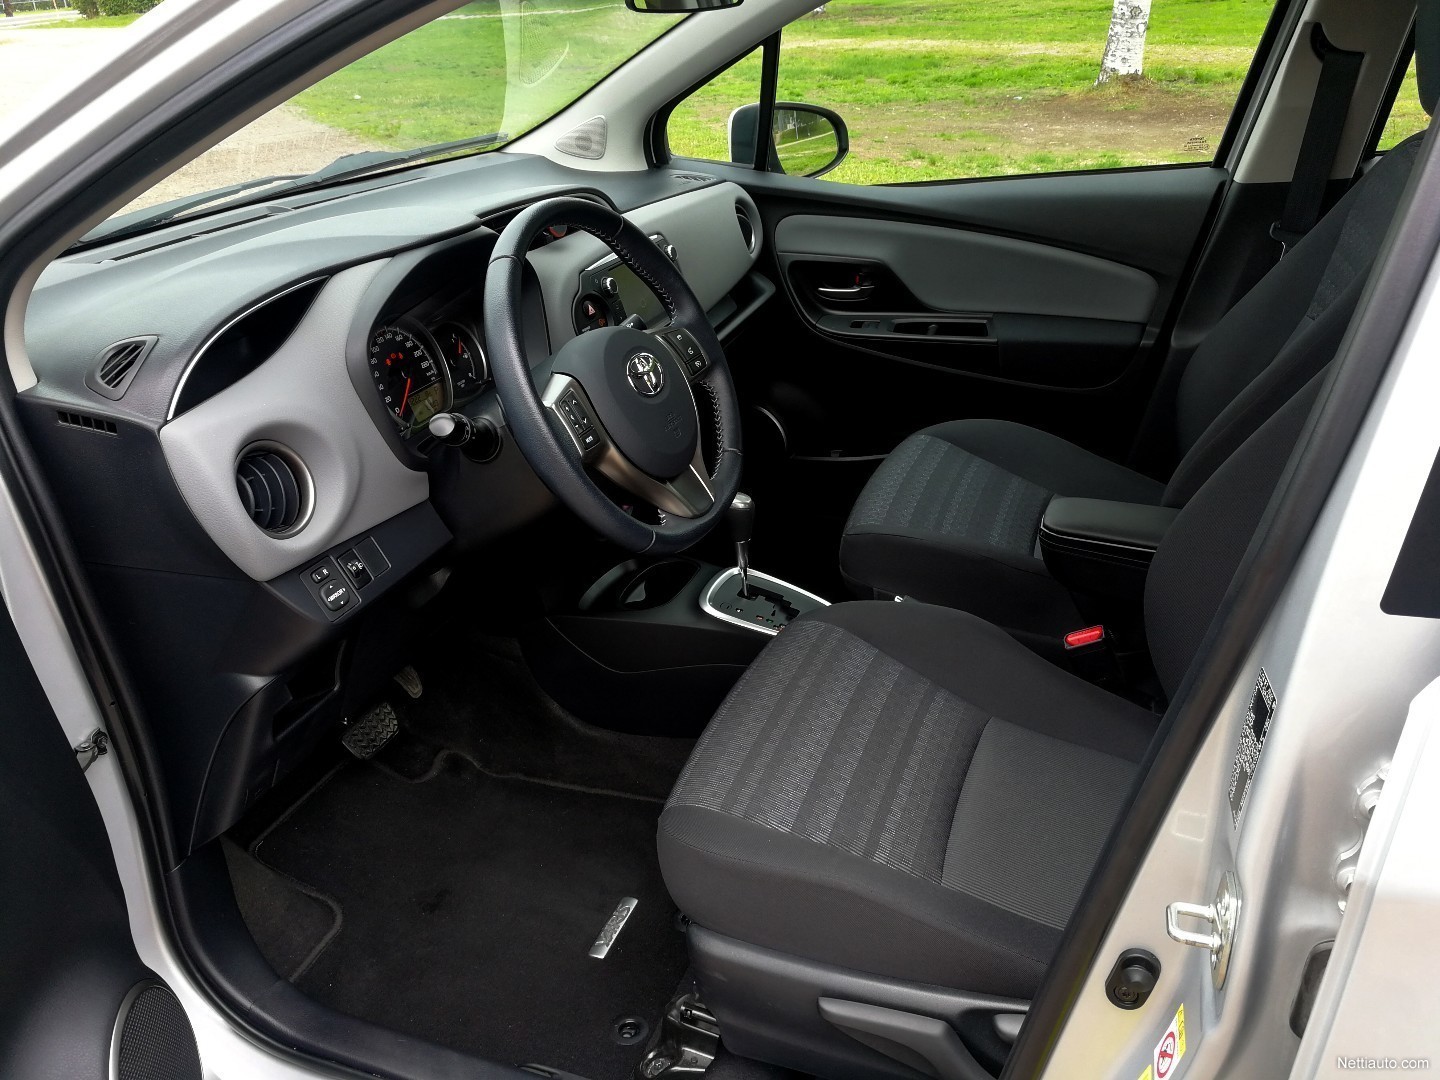 Toyota Yaris kokemuksia - Lue käyttäjien autoarvostelut - Nettiauto